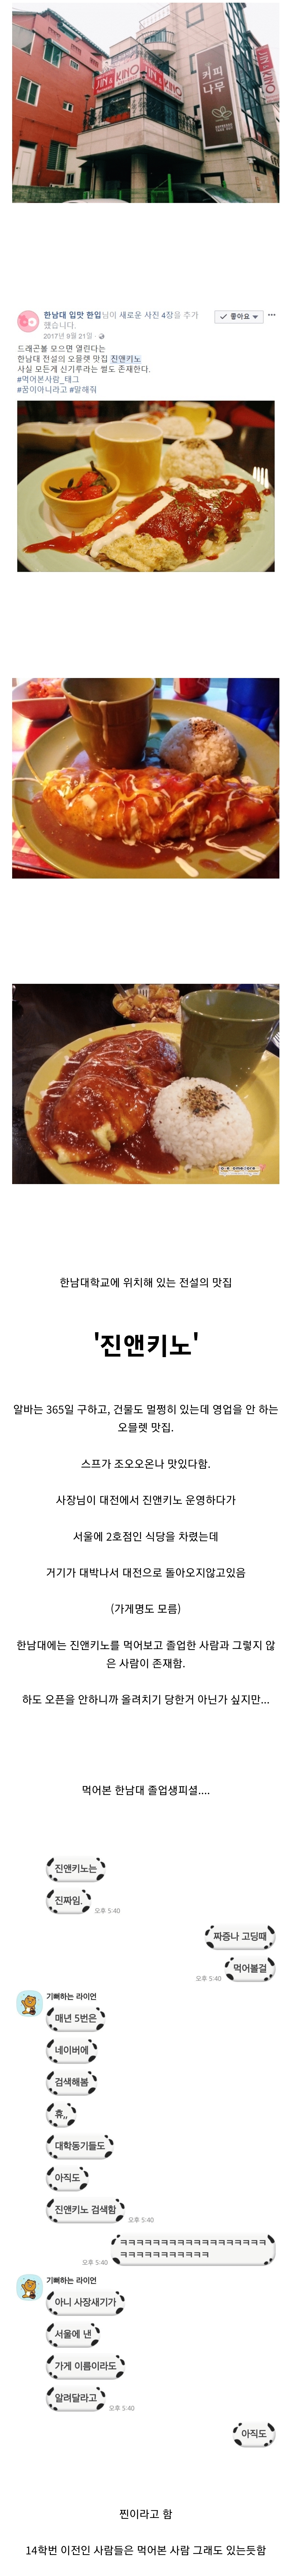 대전에 존재하는 전설의 맛집...jpg